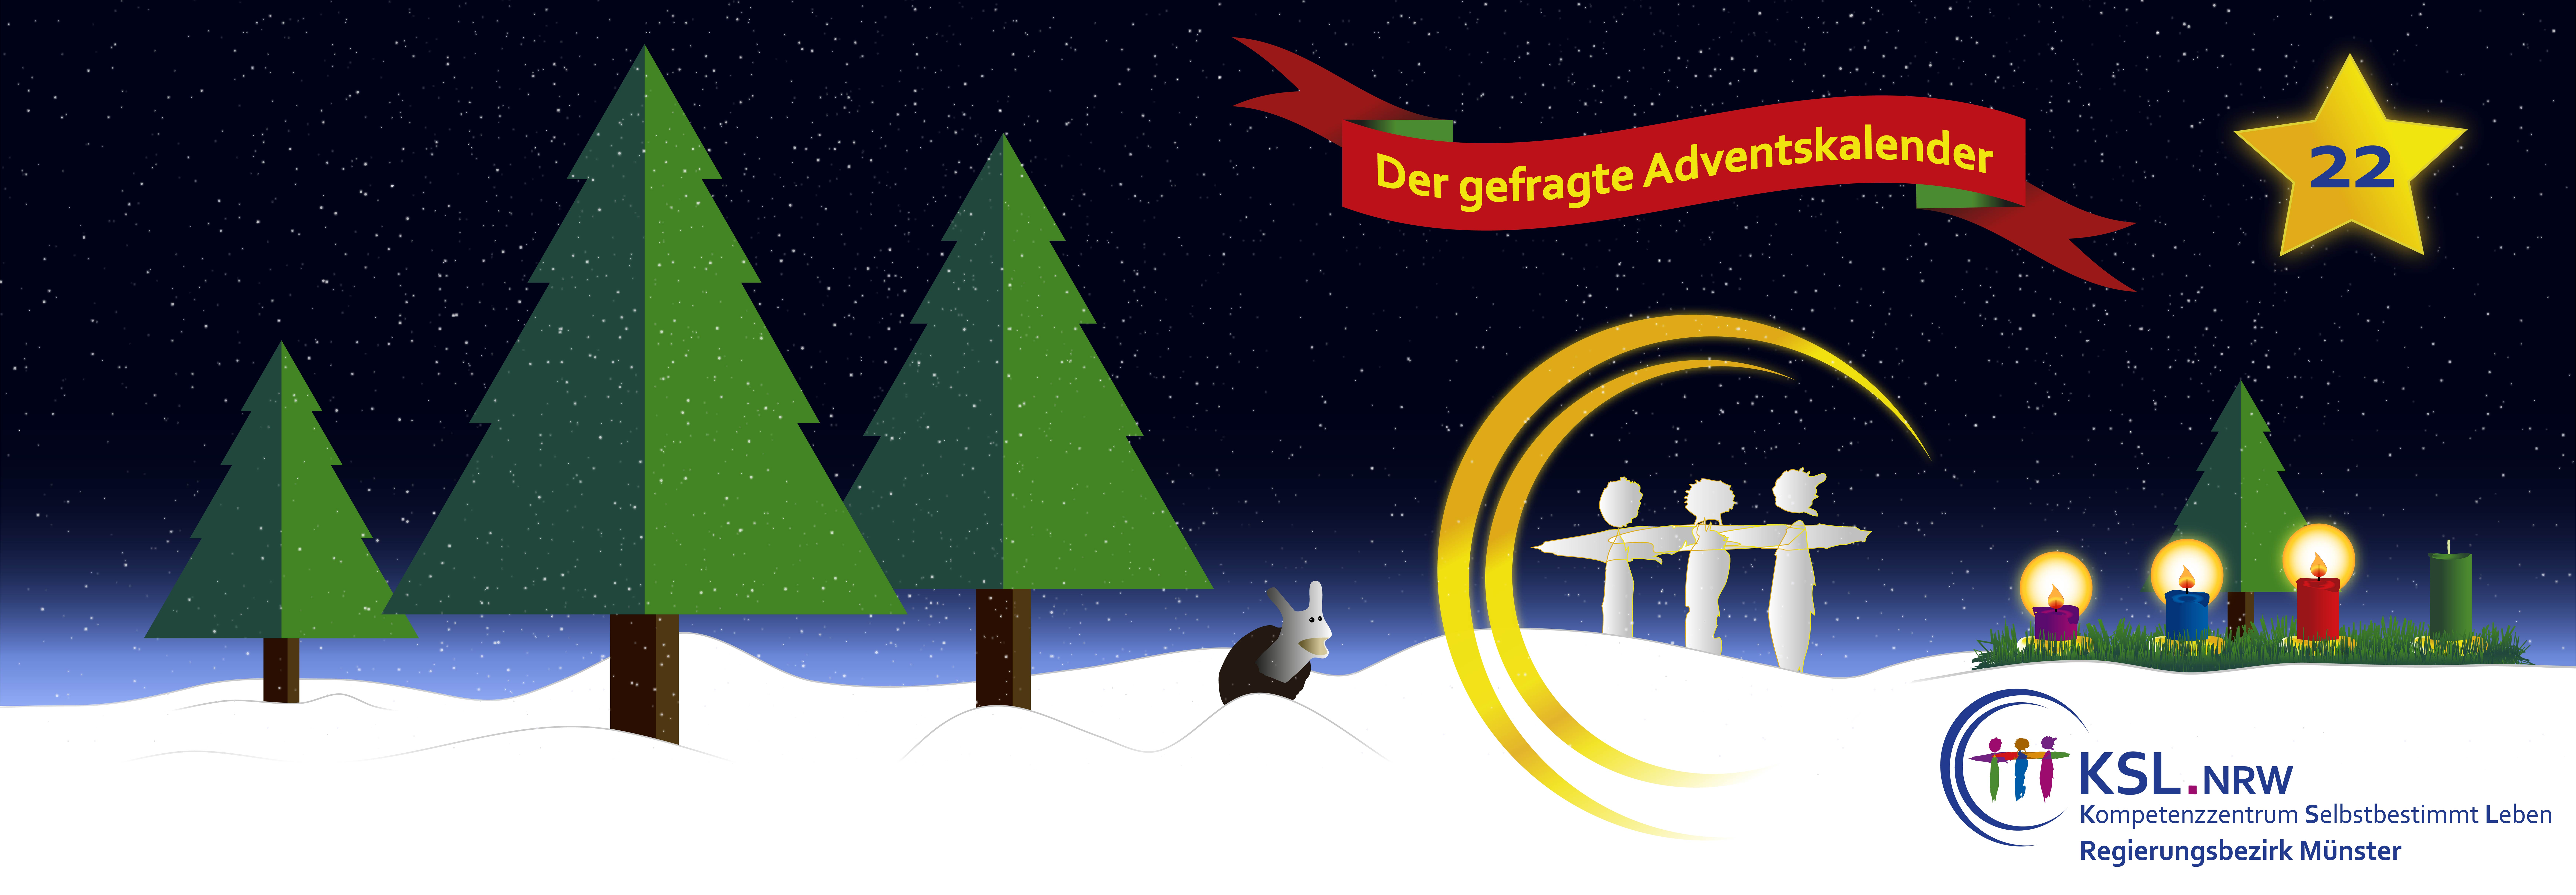 Der gefragte Adventskalender - KSL Münster - weihnachtlicher Hintergrund - vier Tannenbäume - ein Stern mit der Nummer 22 - ein Adventskranz mit vier Kerzen